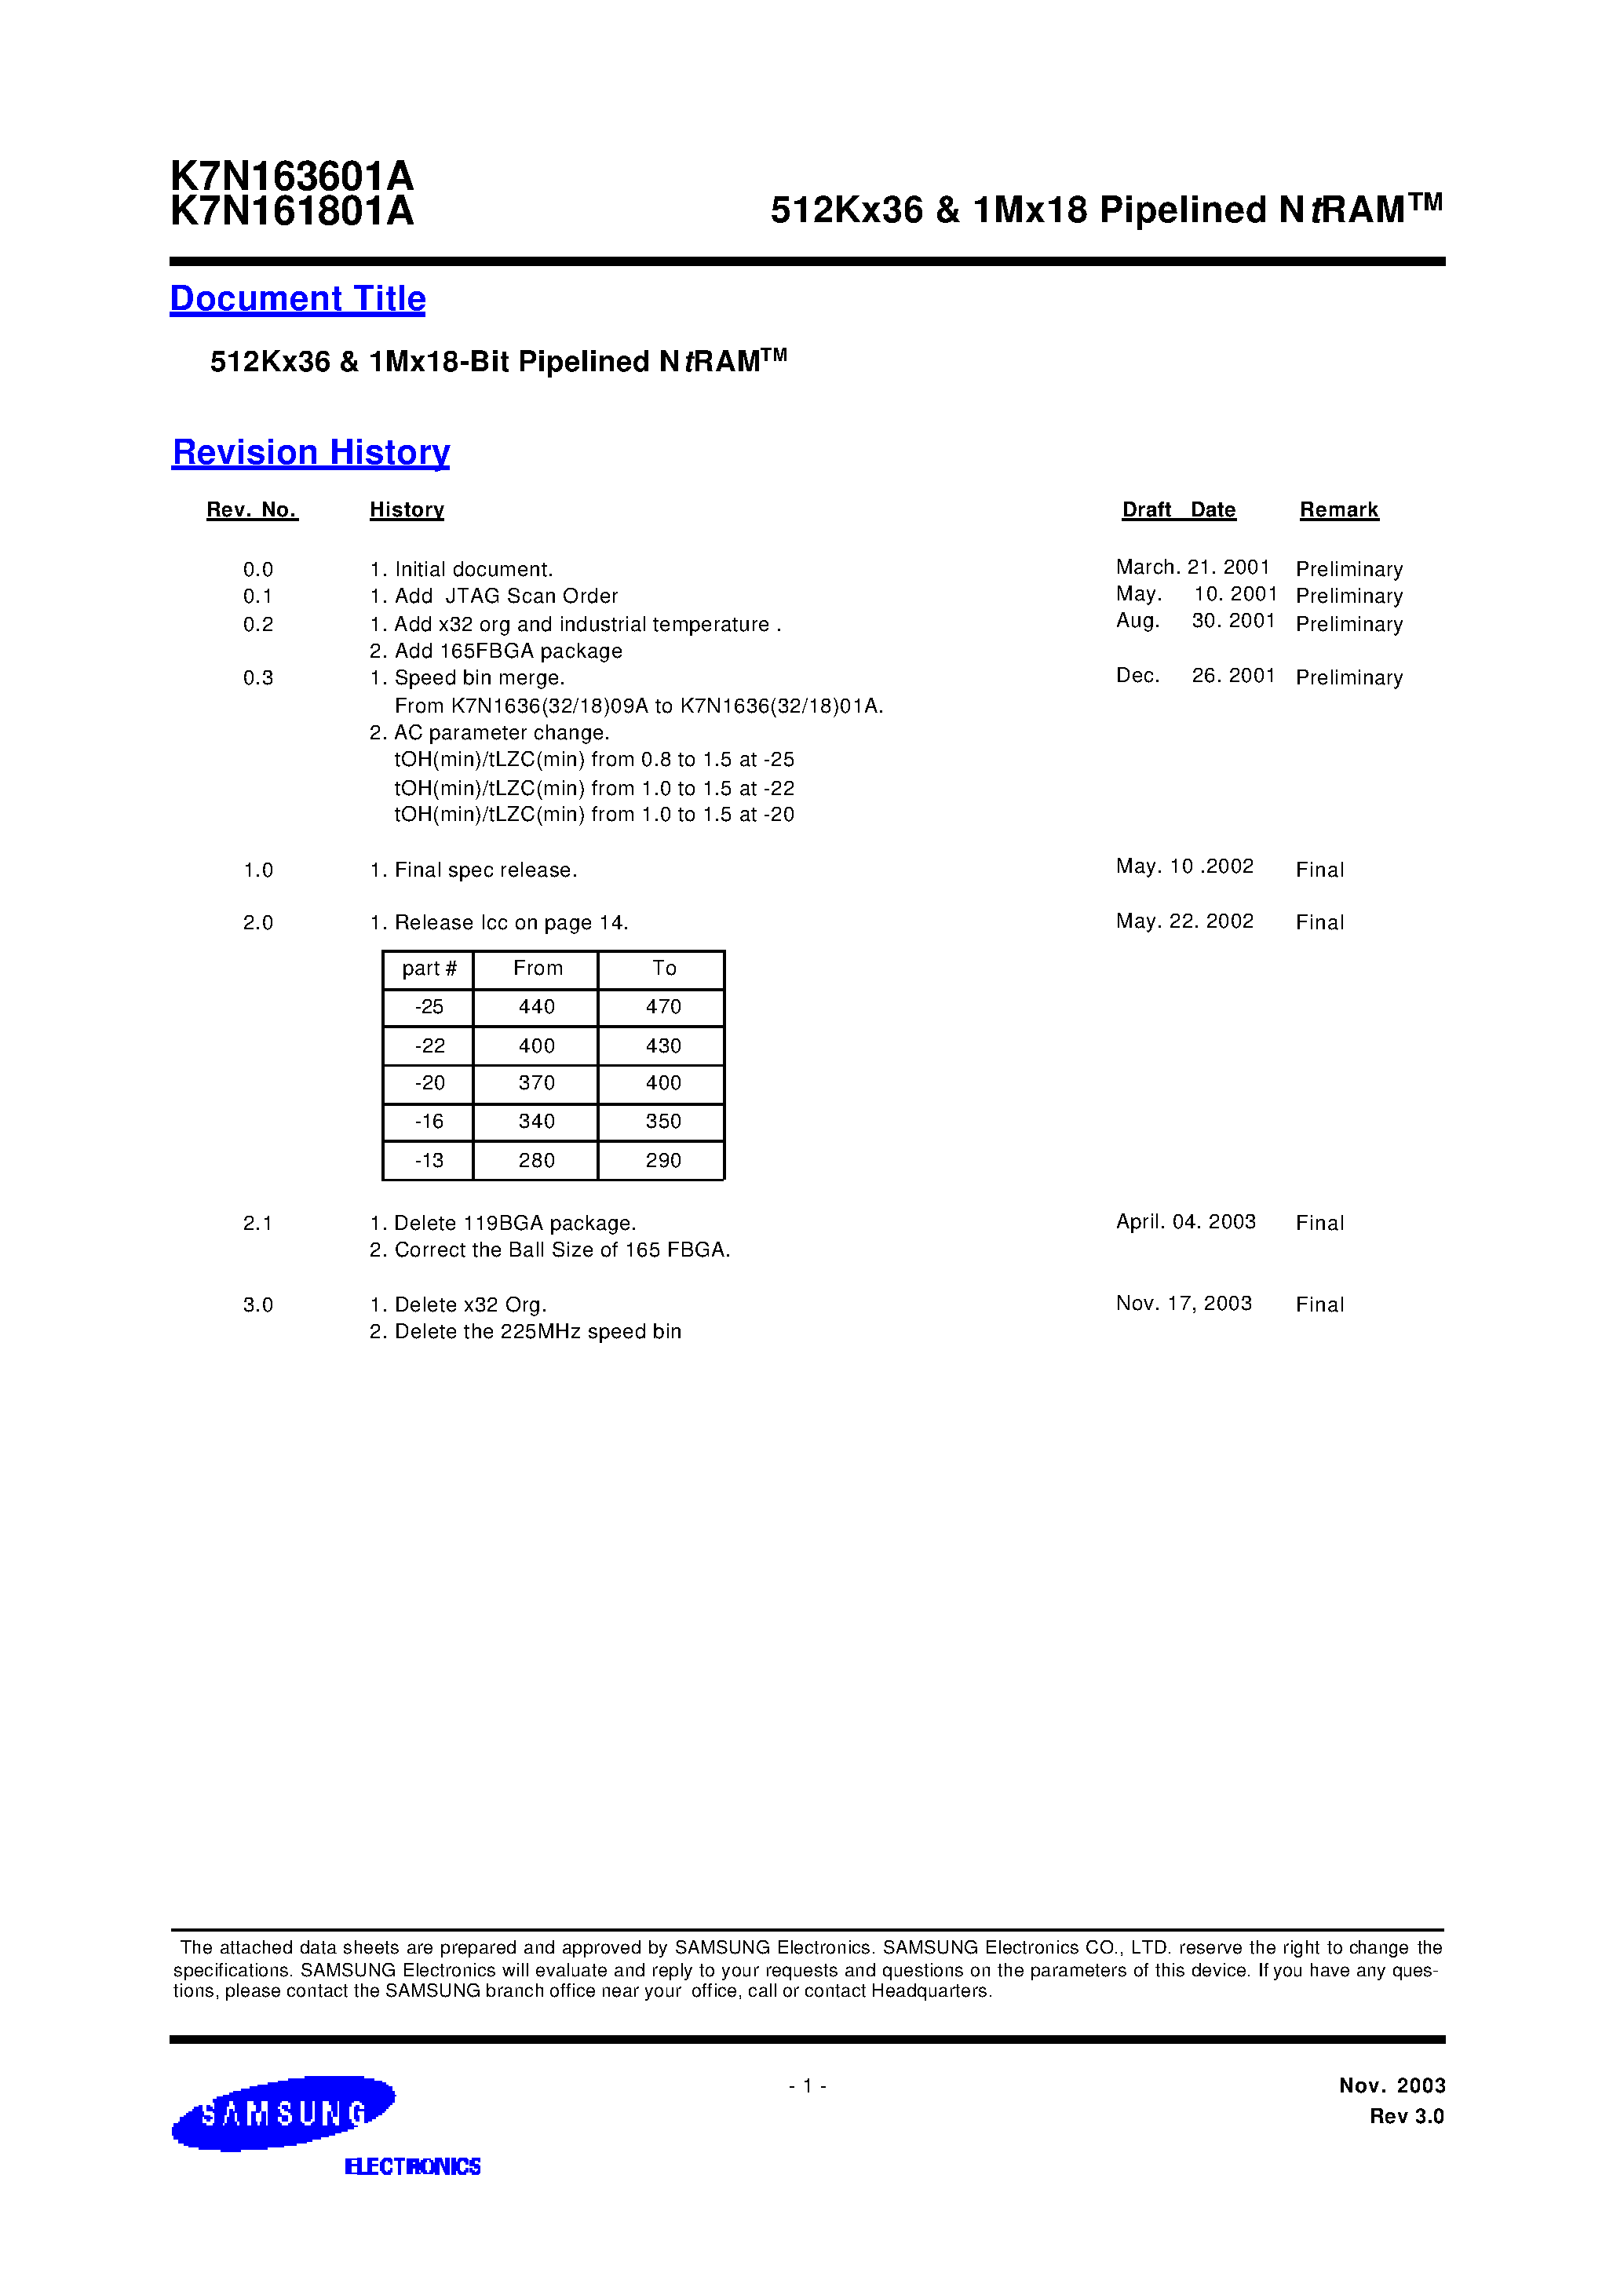 Даташит K7N163645A-Q(F)C(I)20-512Kx36 & 1Mx18 Pipelined NtRAM страница 1